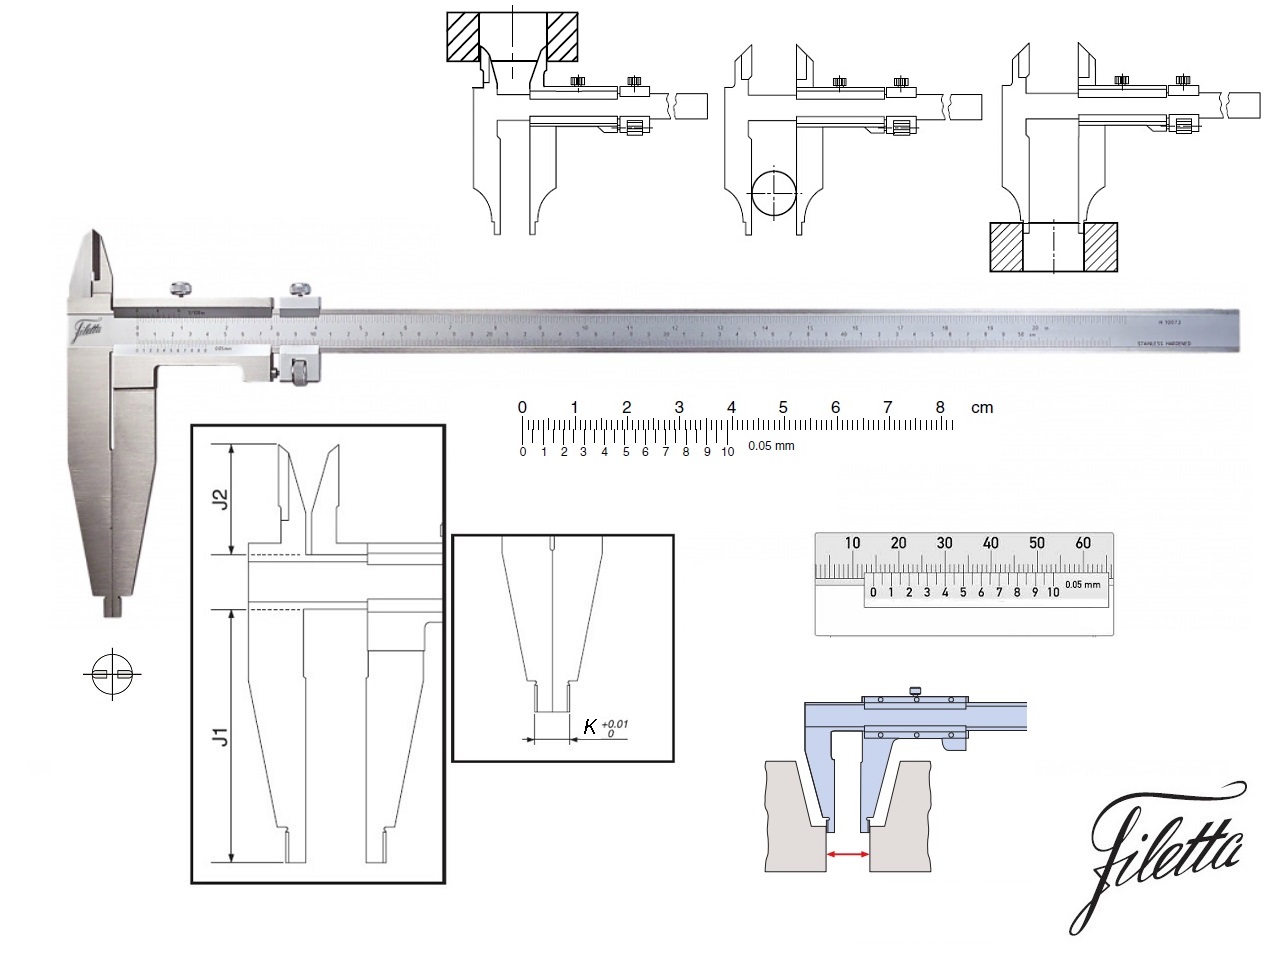 Posuvné měřítko Filetta 0-600 mm, čelisti 150 mm, s měřicími nožíky pro vnitřní měření